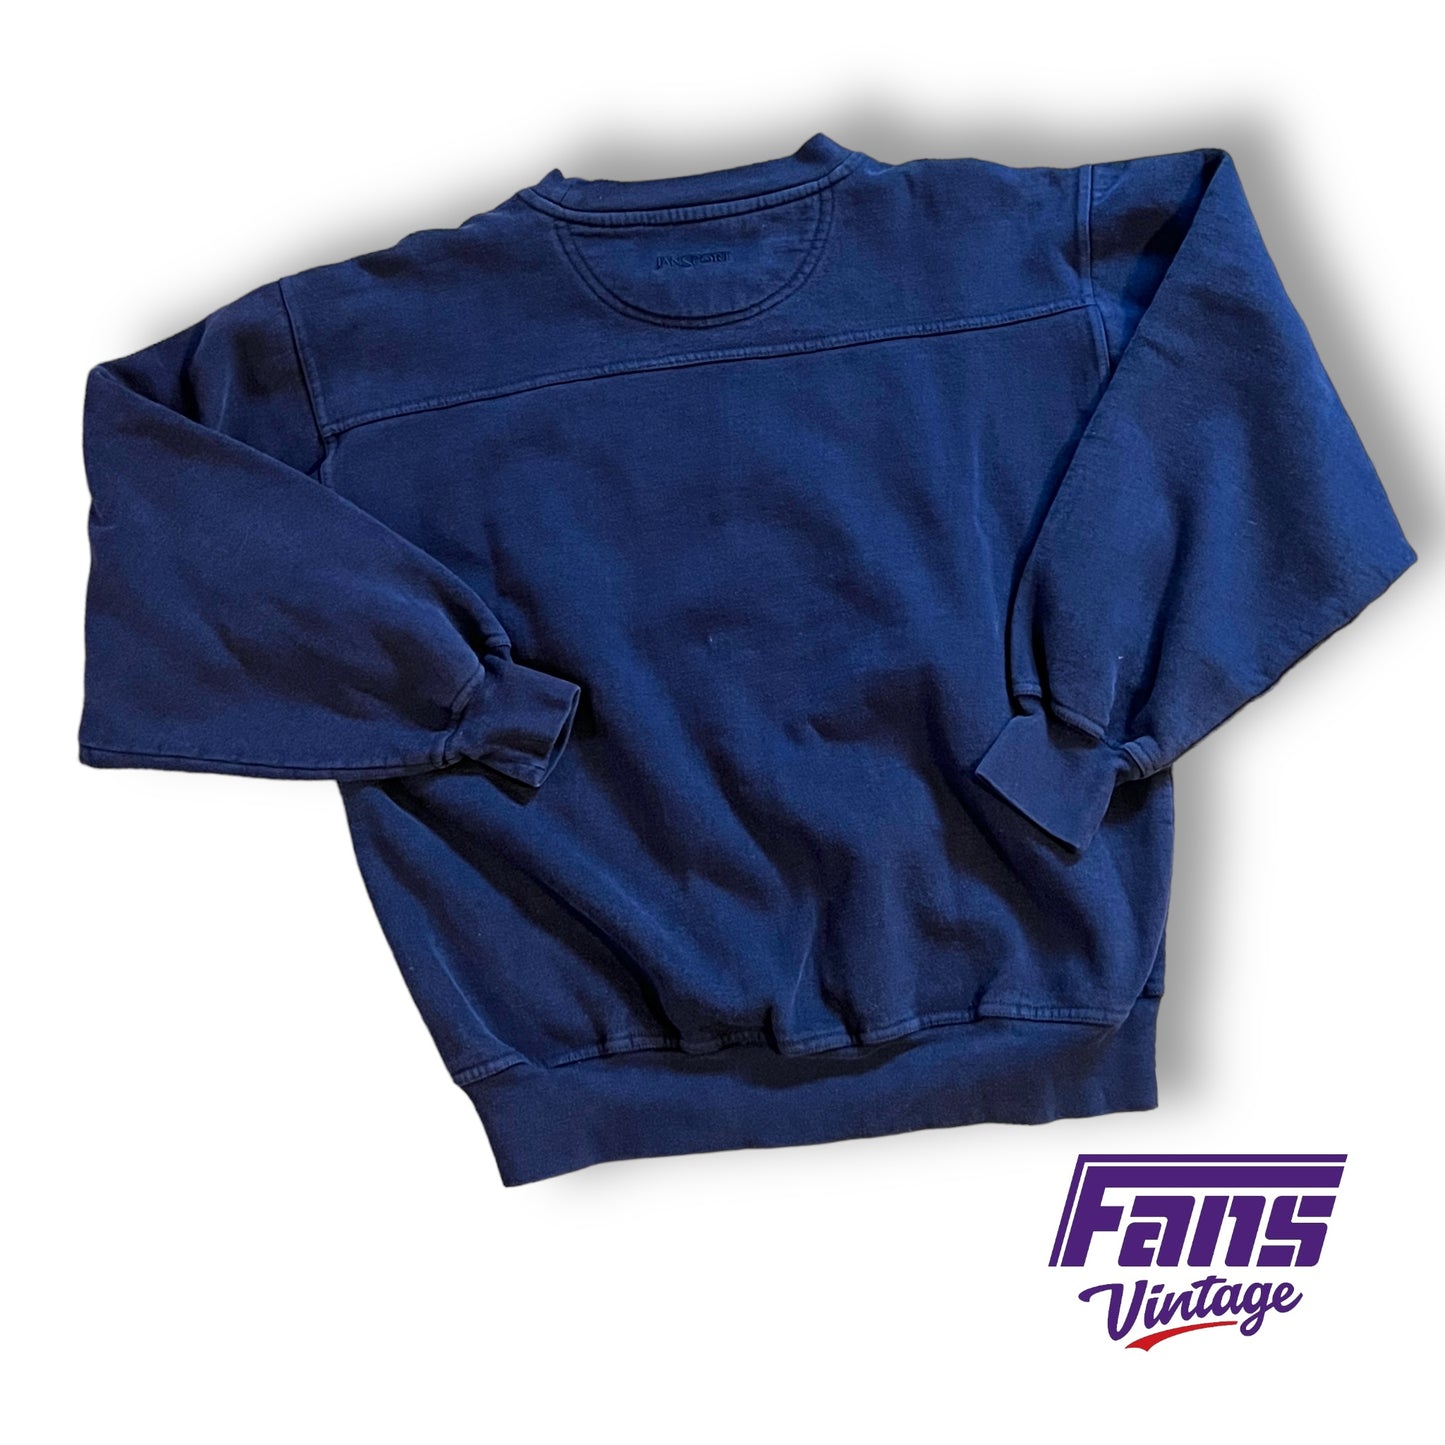 90s Vintage TCU Crewneck Sweater - Rare Navy Color!